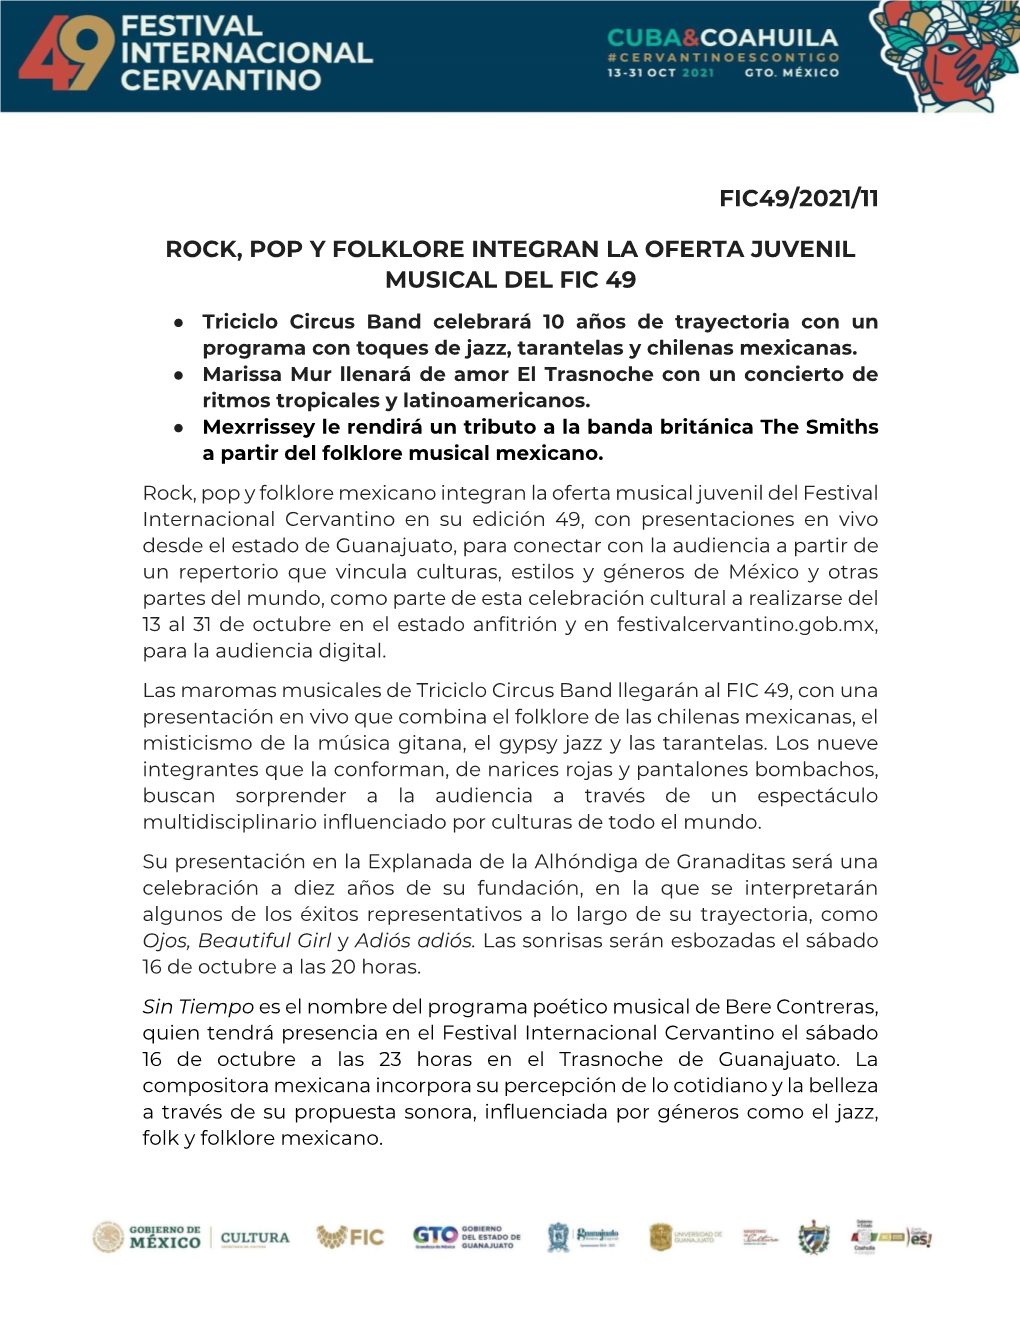 Fic49/2021/11 Rock, Pop Y Folklore Integran La Oferta Juvenil Musical